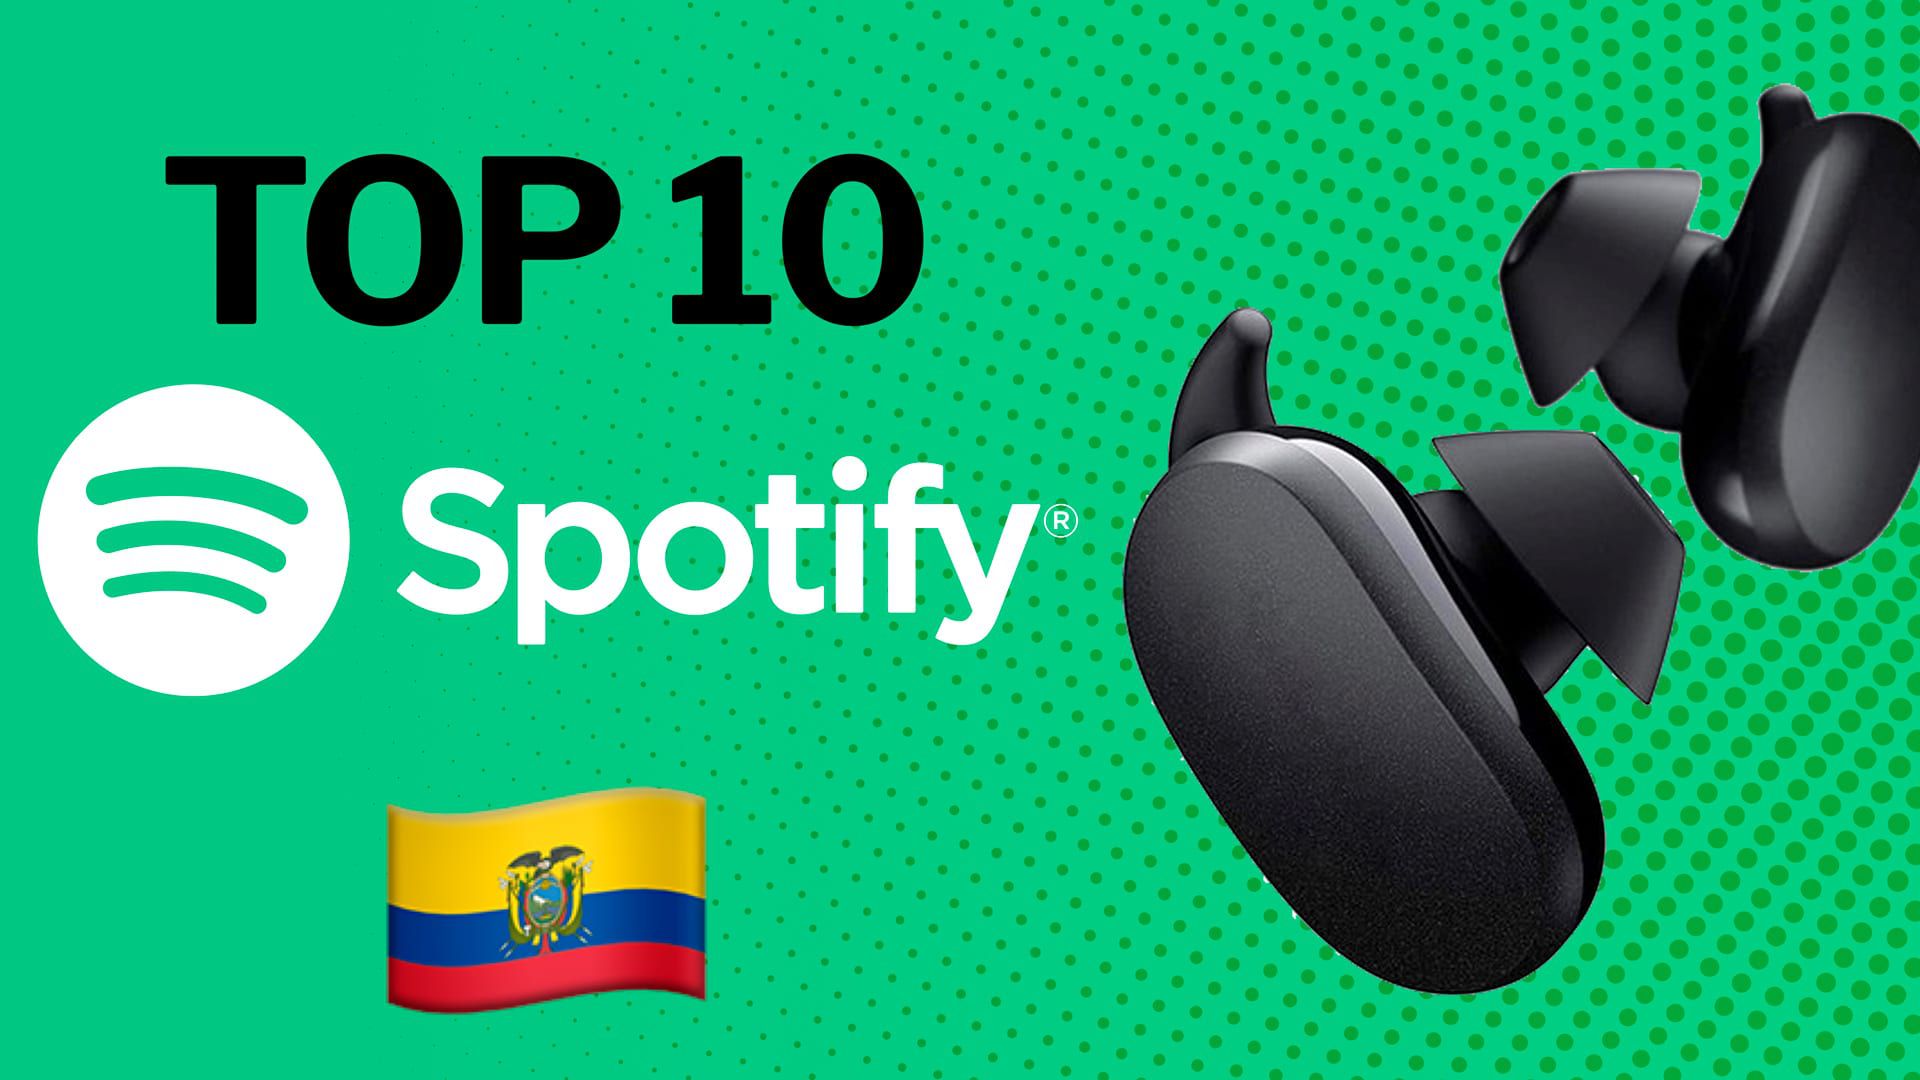 Ranking Spotify: las 10 canciones más escuchadas en Ecuador